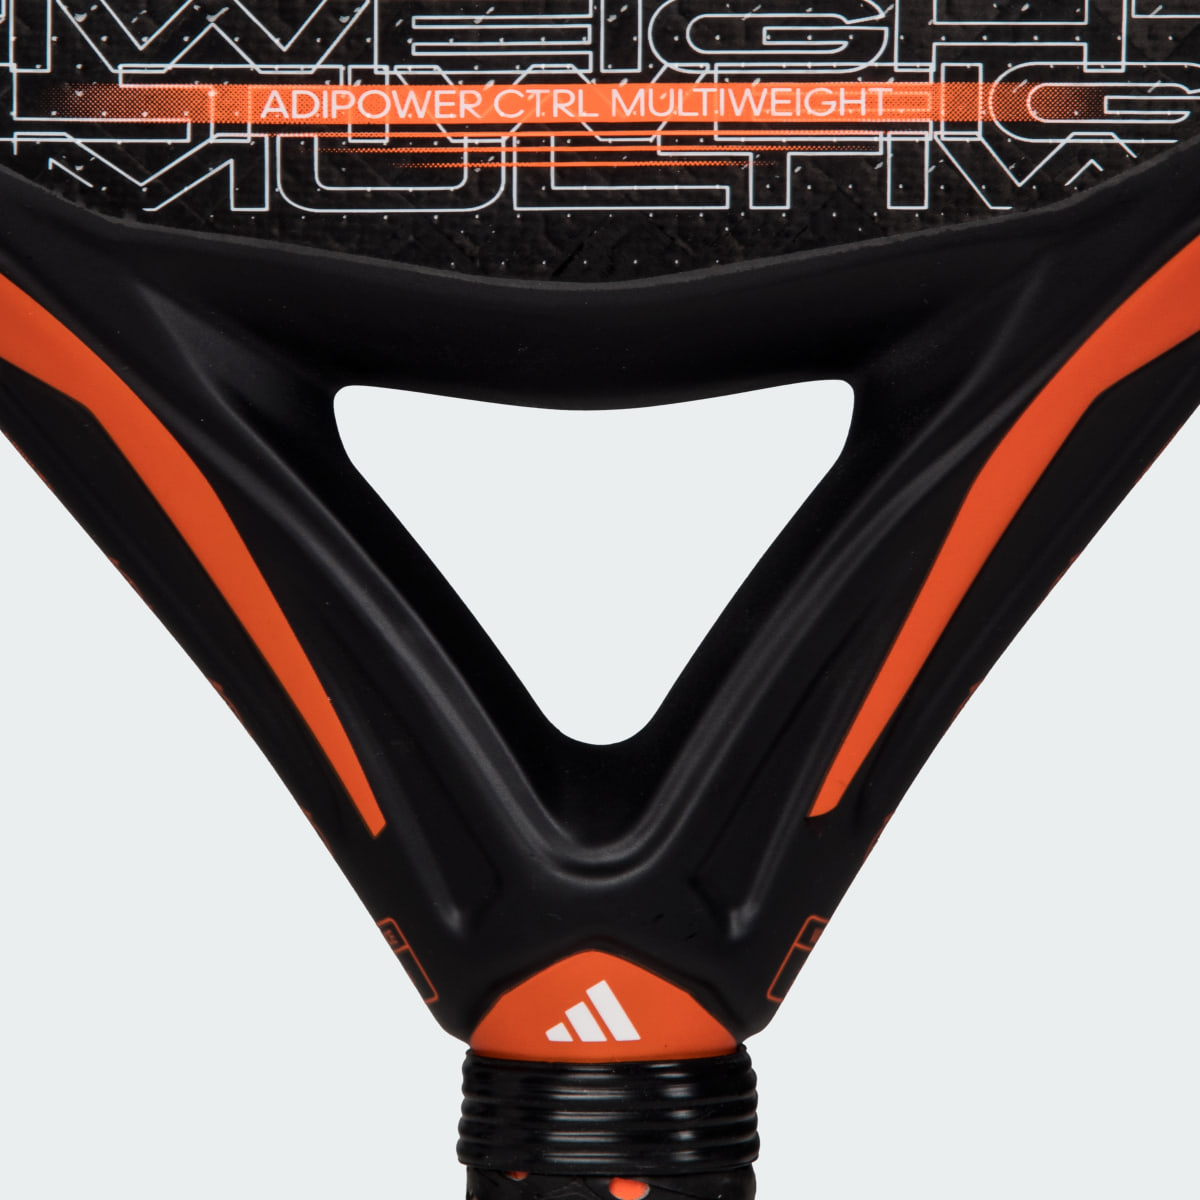 Adidas Rakieta do padla Adipower Multiweight CTRL 3.3. 6